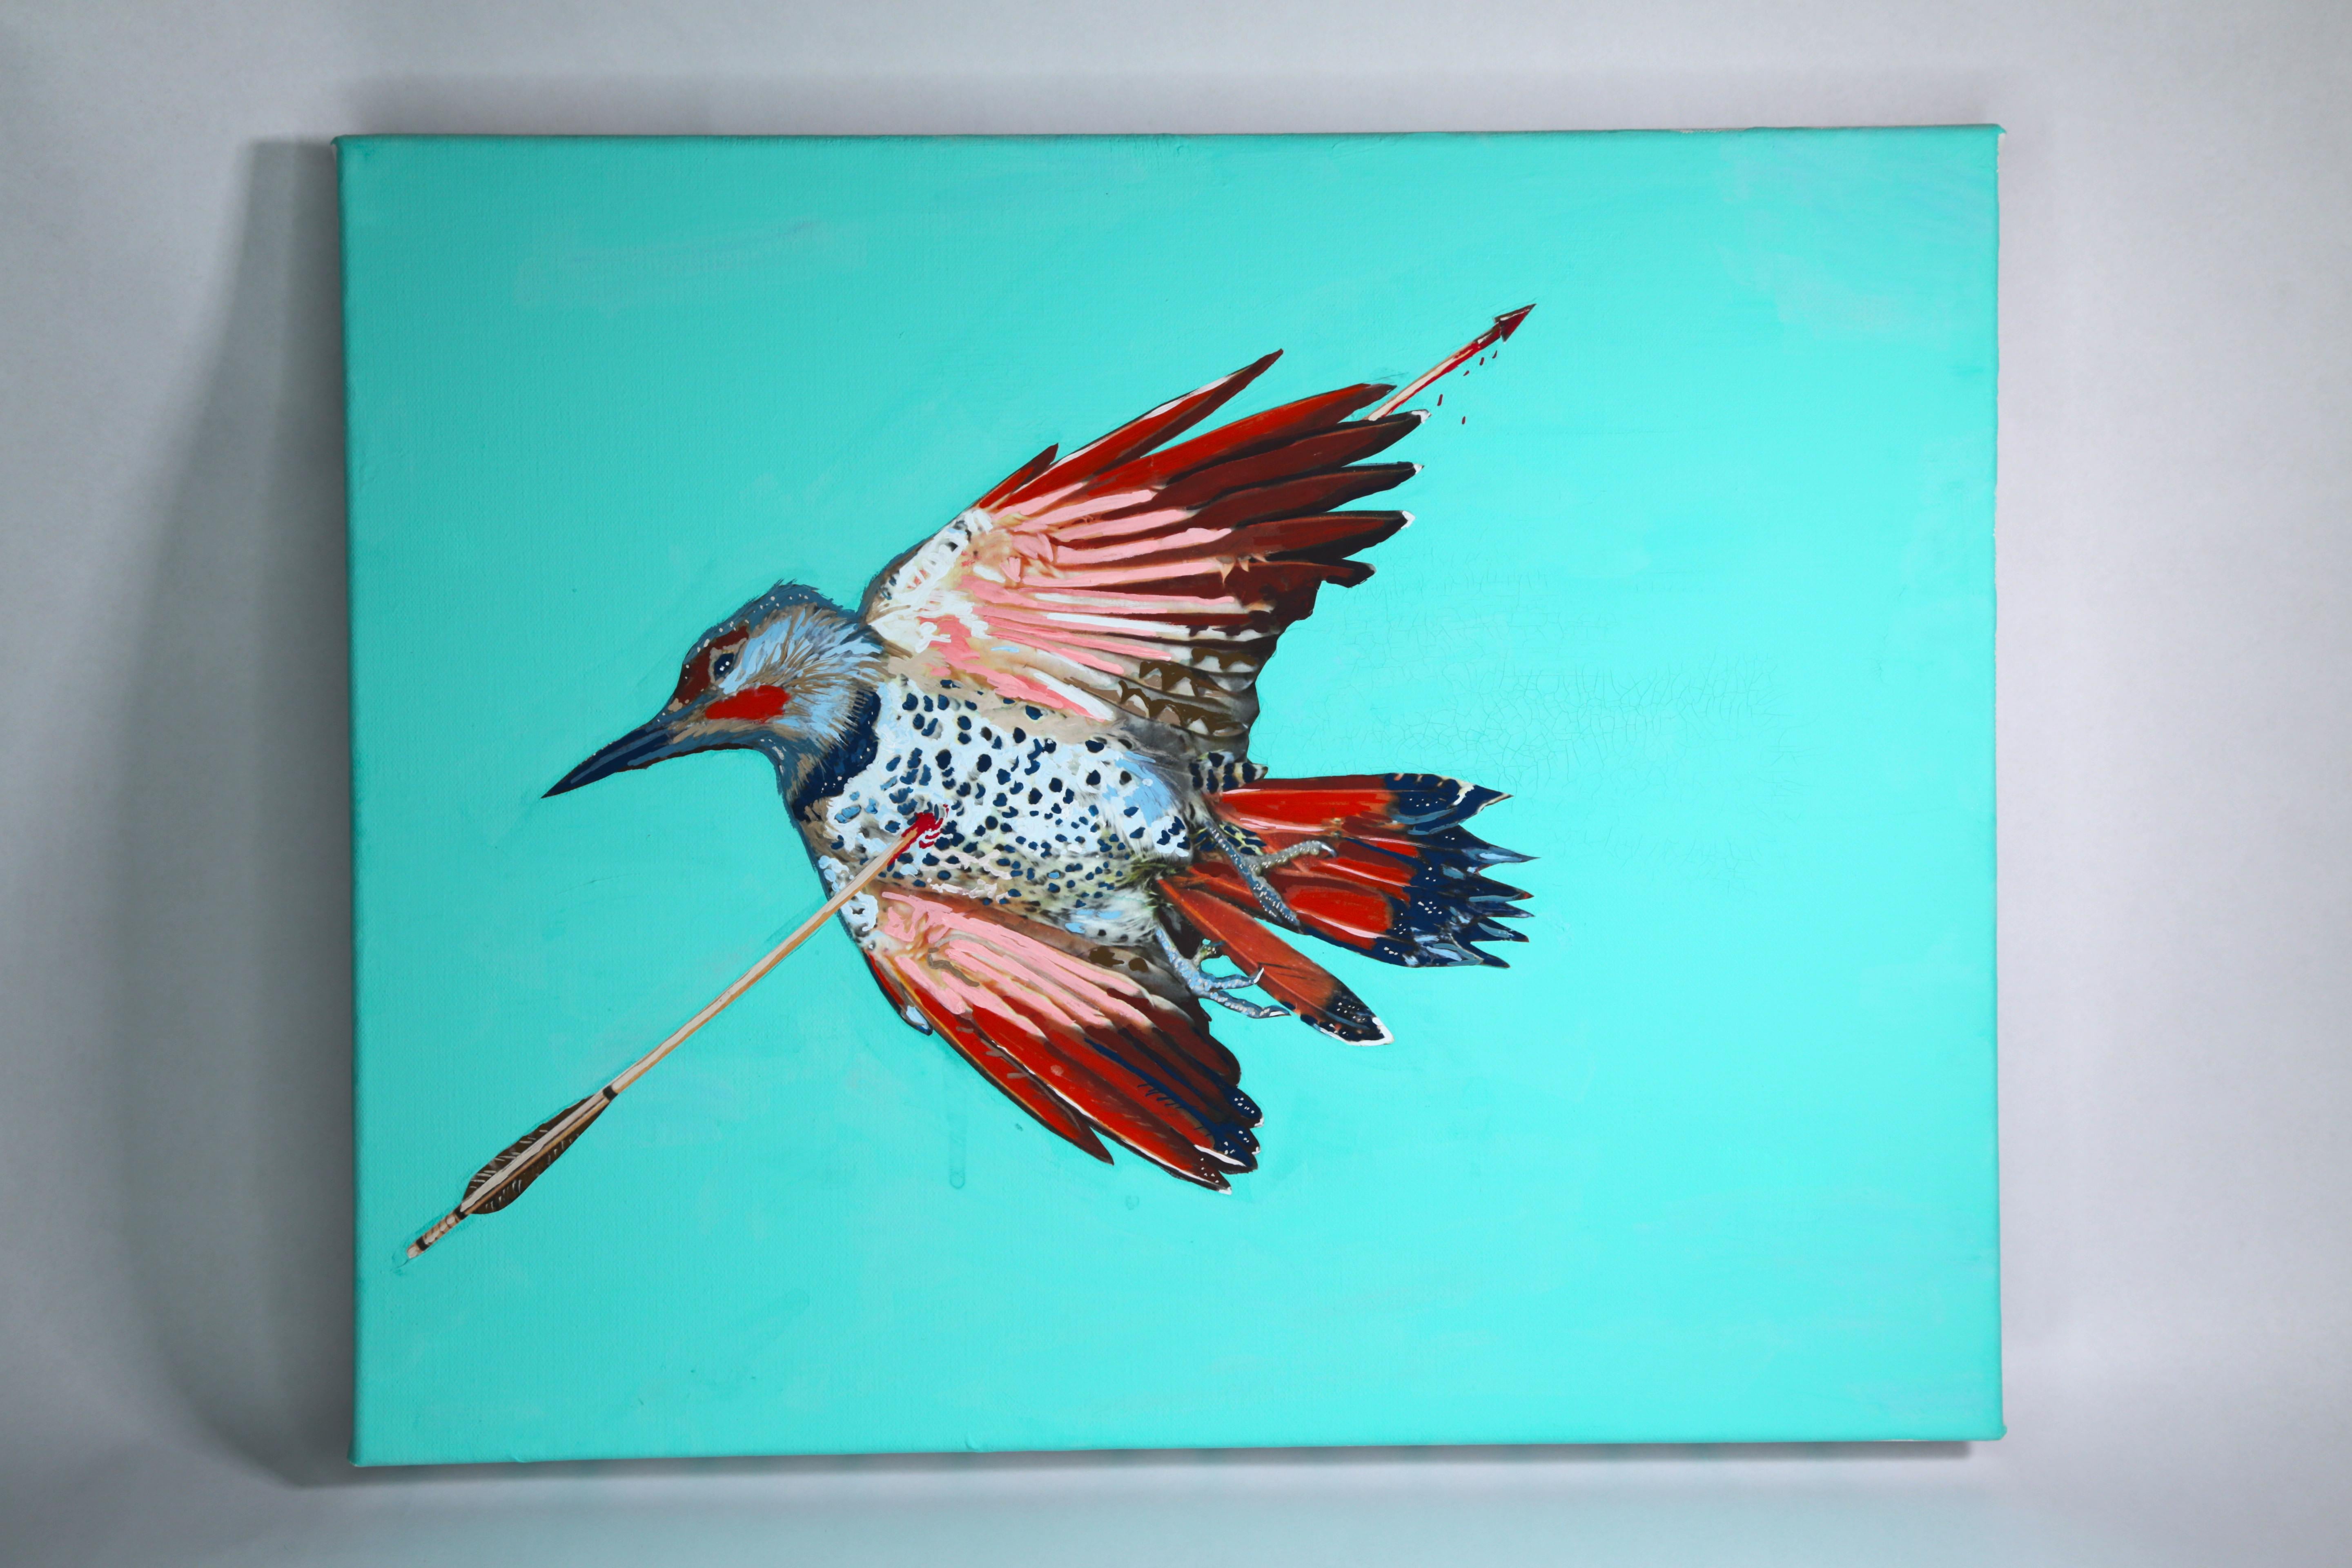 Animal Painting Ethan Minsker - Peinture au collage sur toile : "Bird 5"